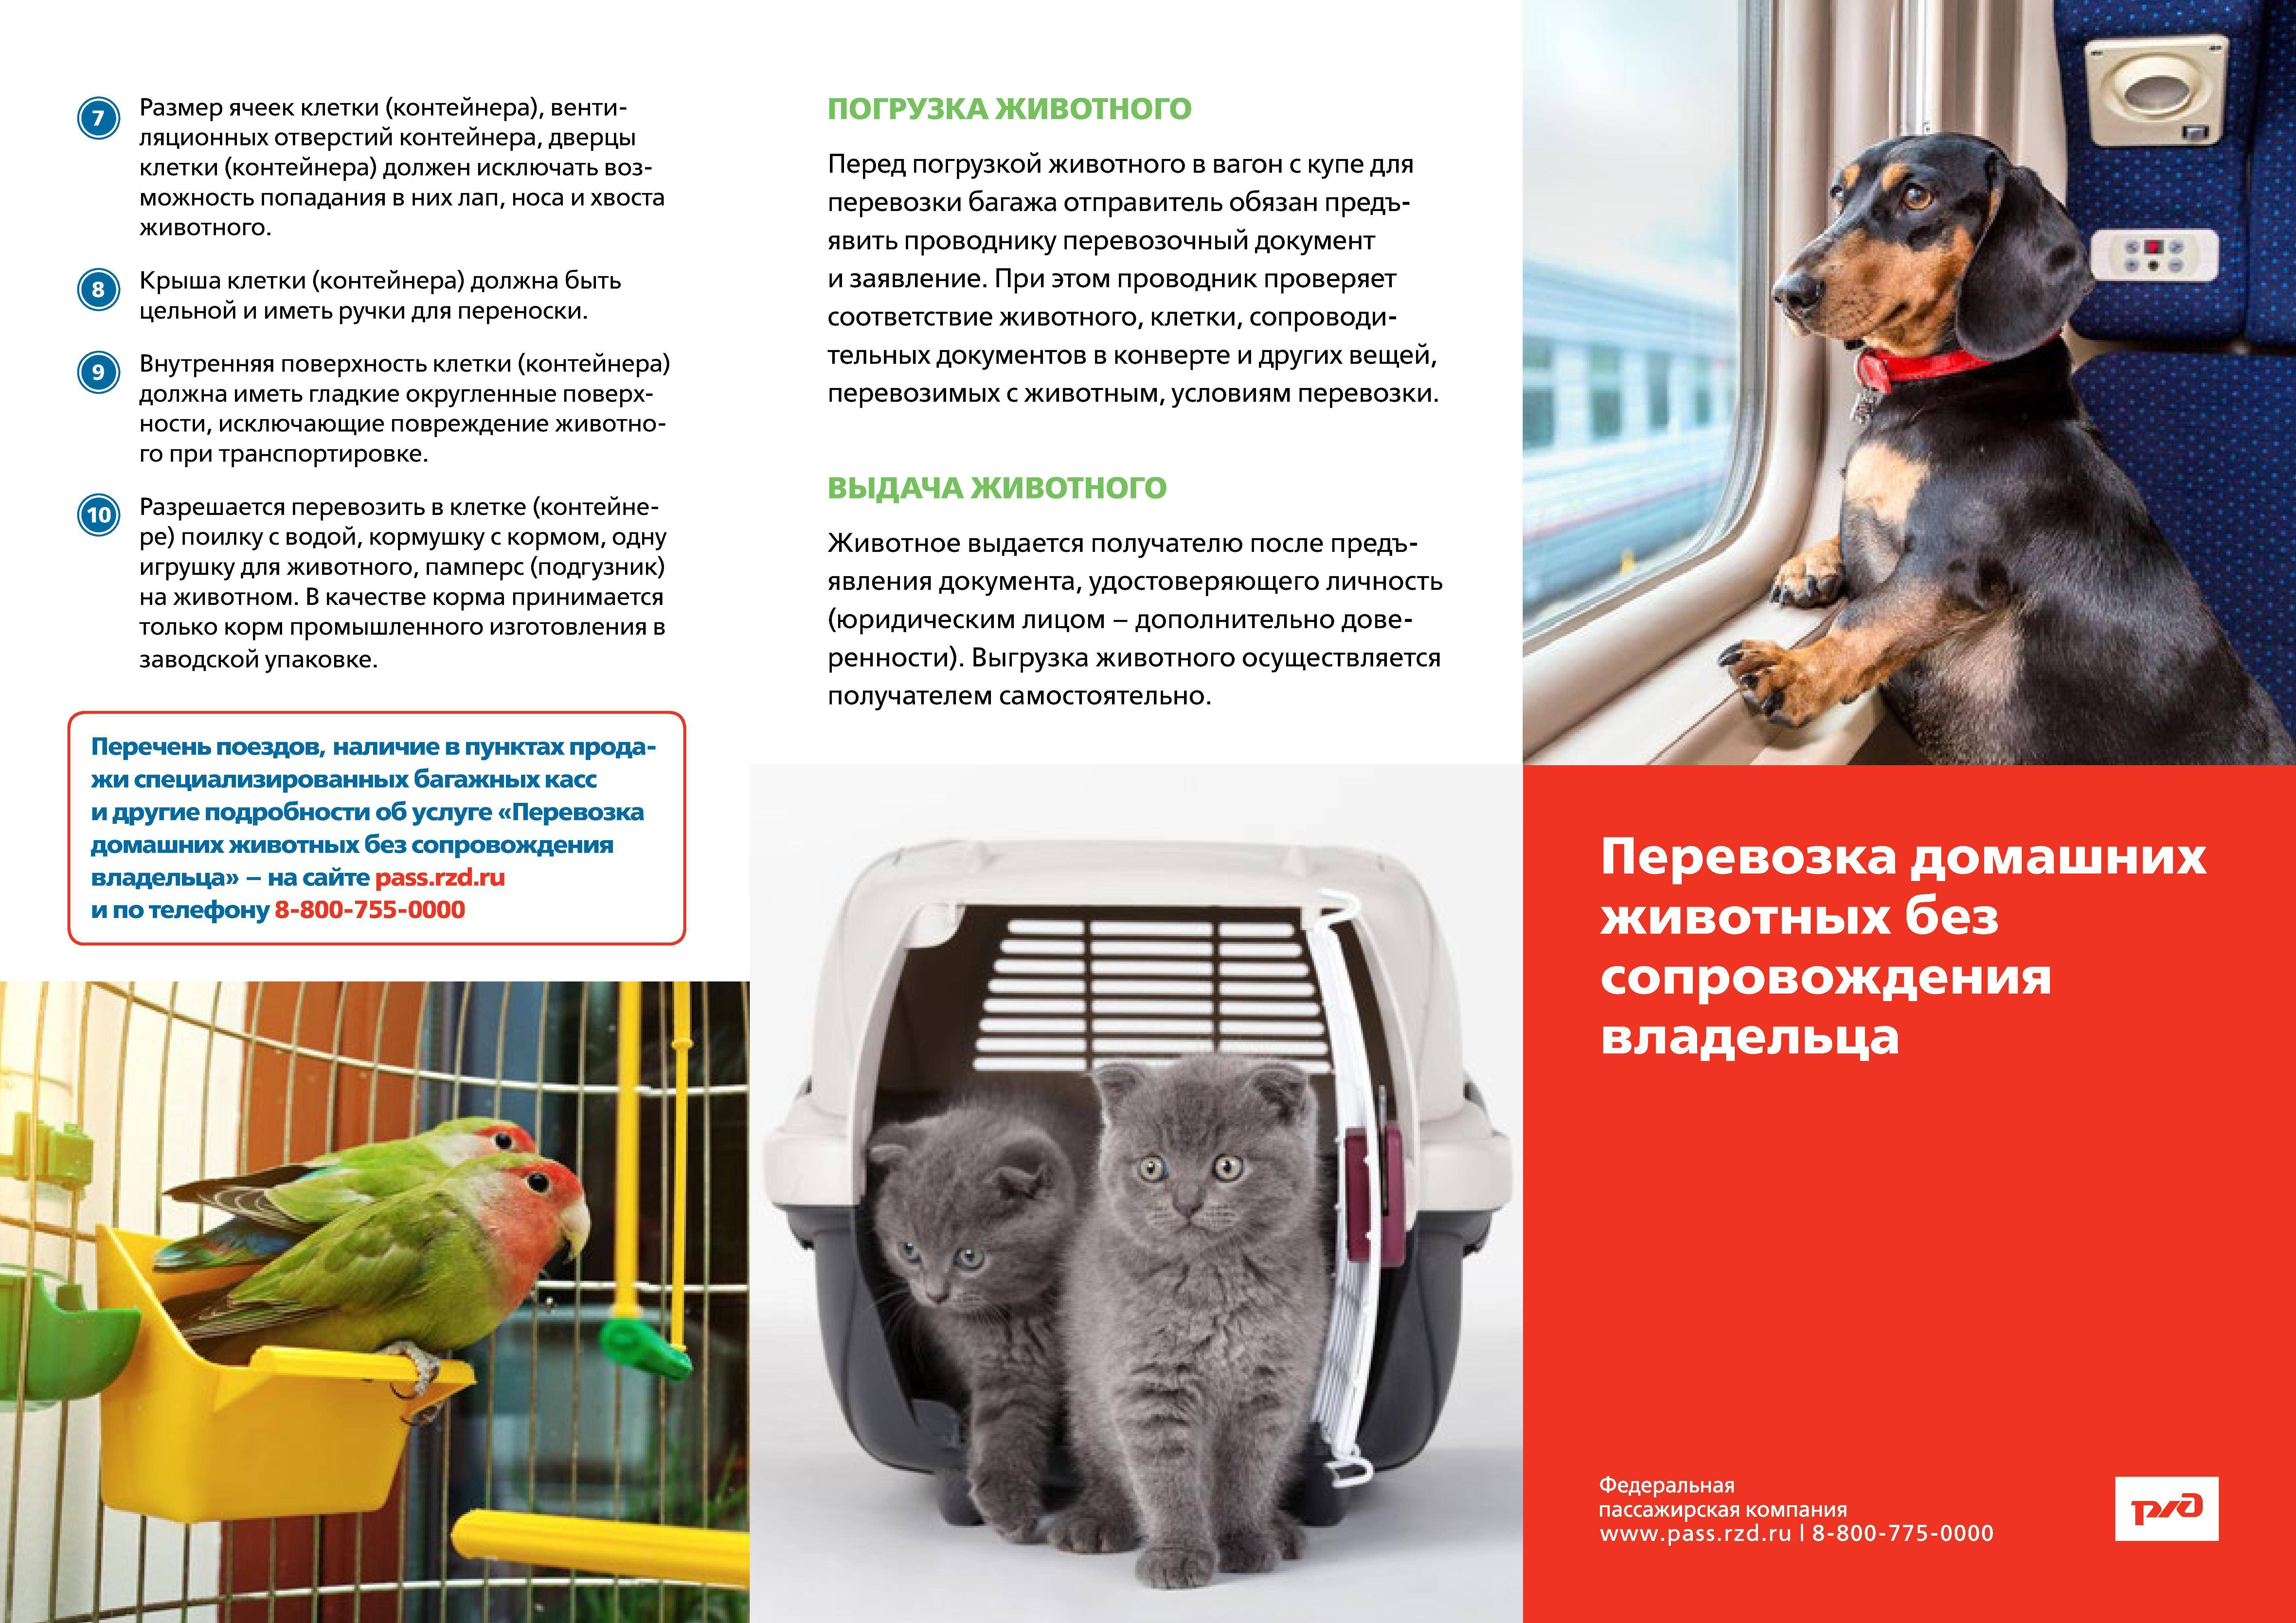 Как перевозить домашних животных в самолётах, поездах и автобусах - парламентская газета